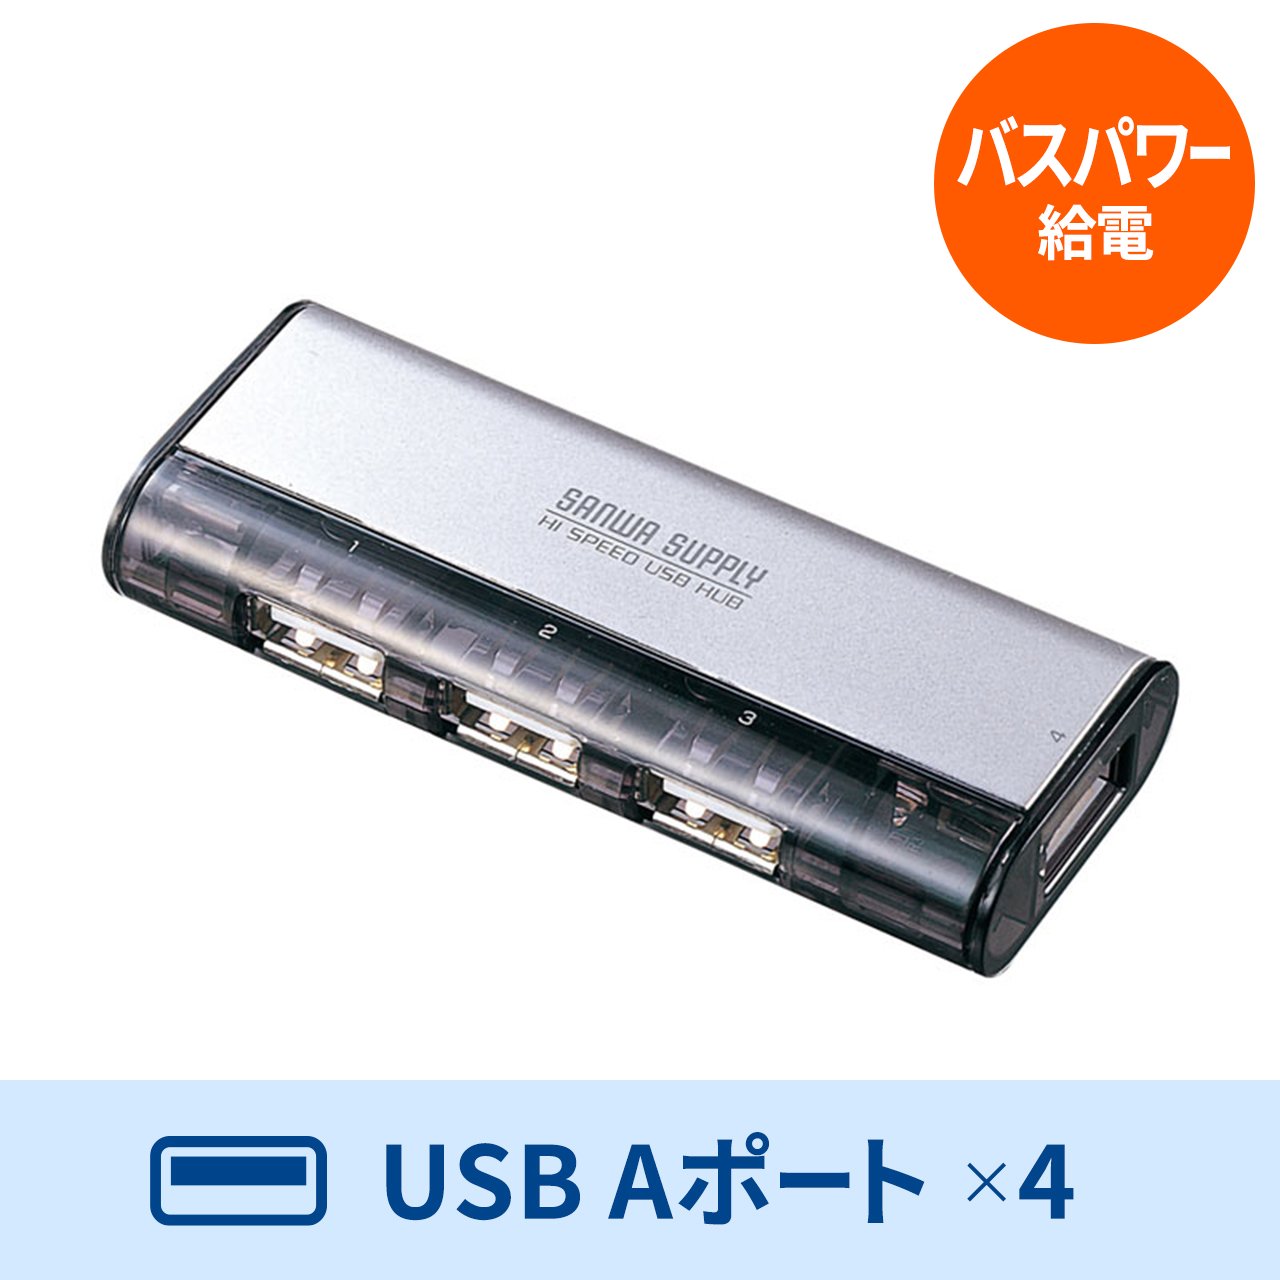 USB2.0ハブ 4ポート ACアダプタ付 シルバー[USB-HUB225GSVN]